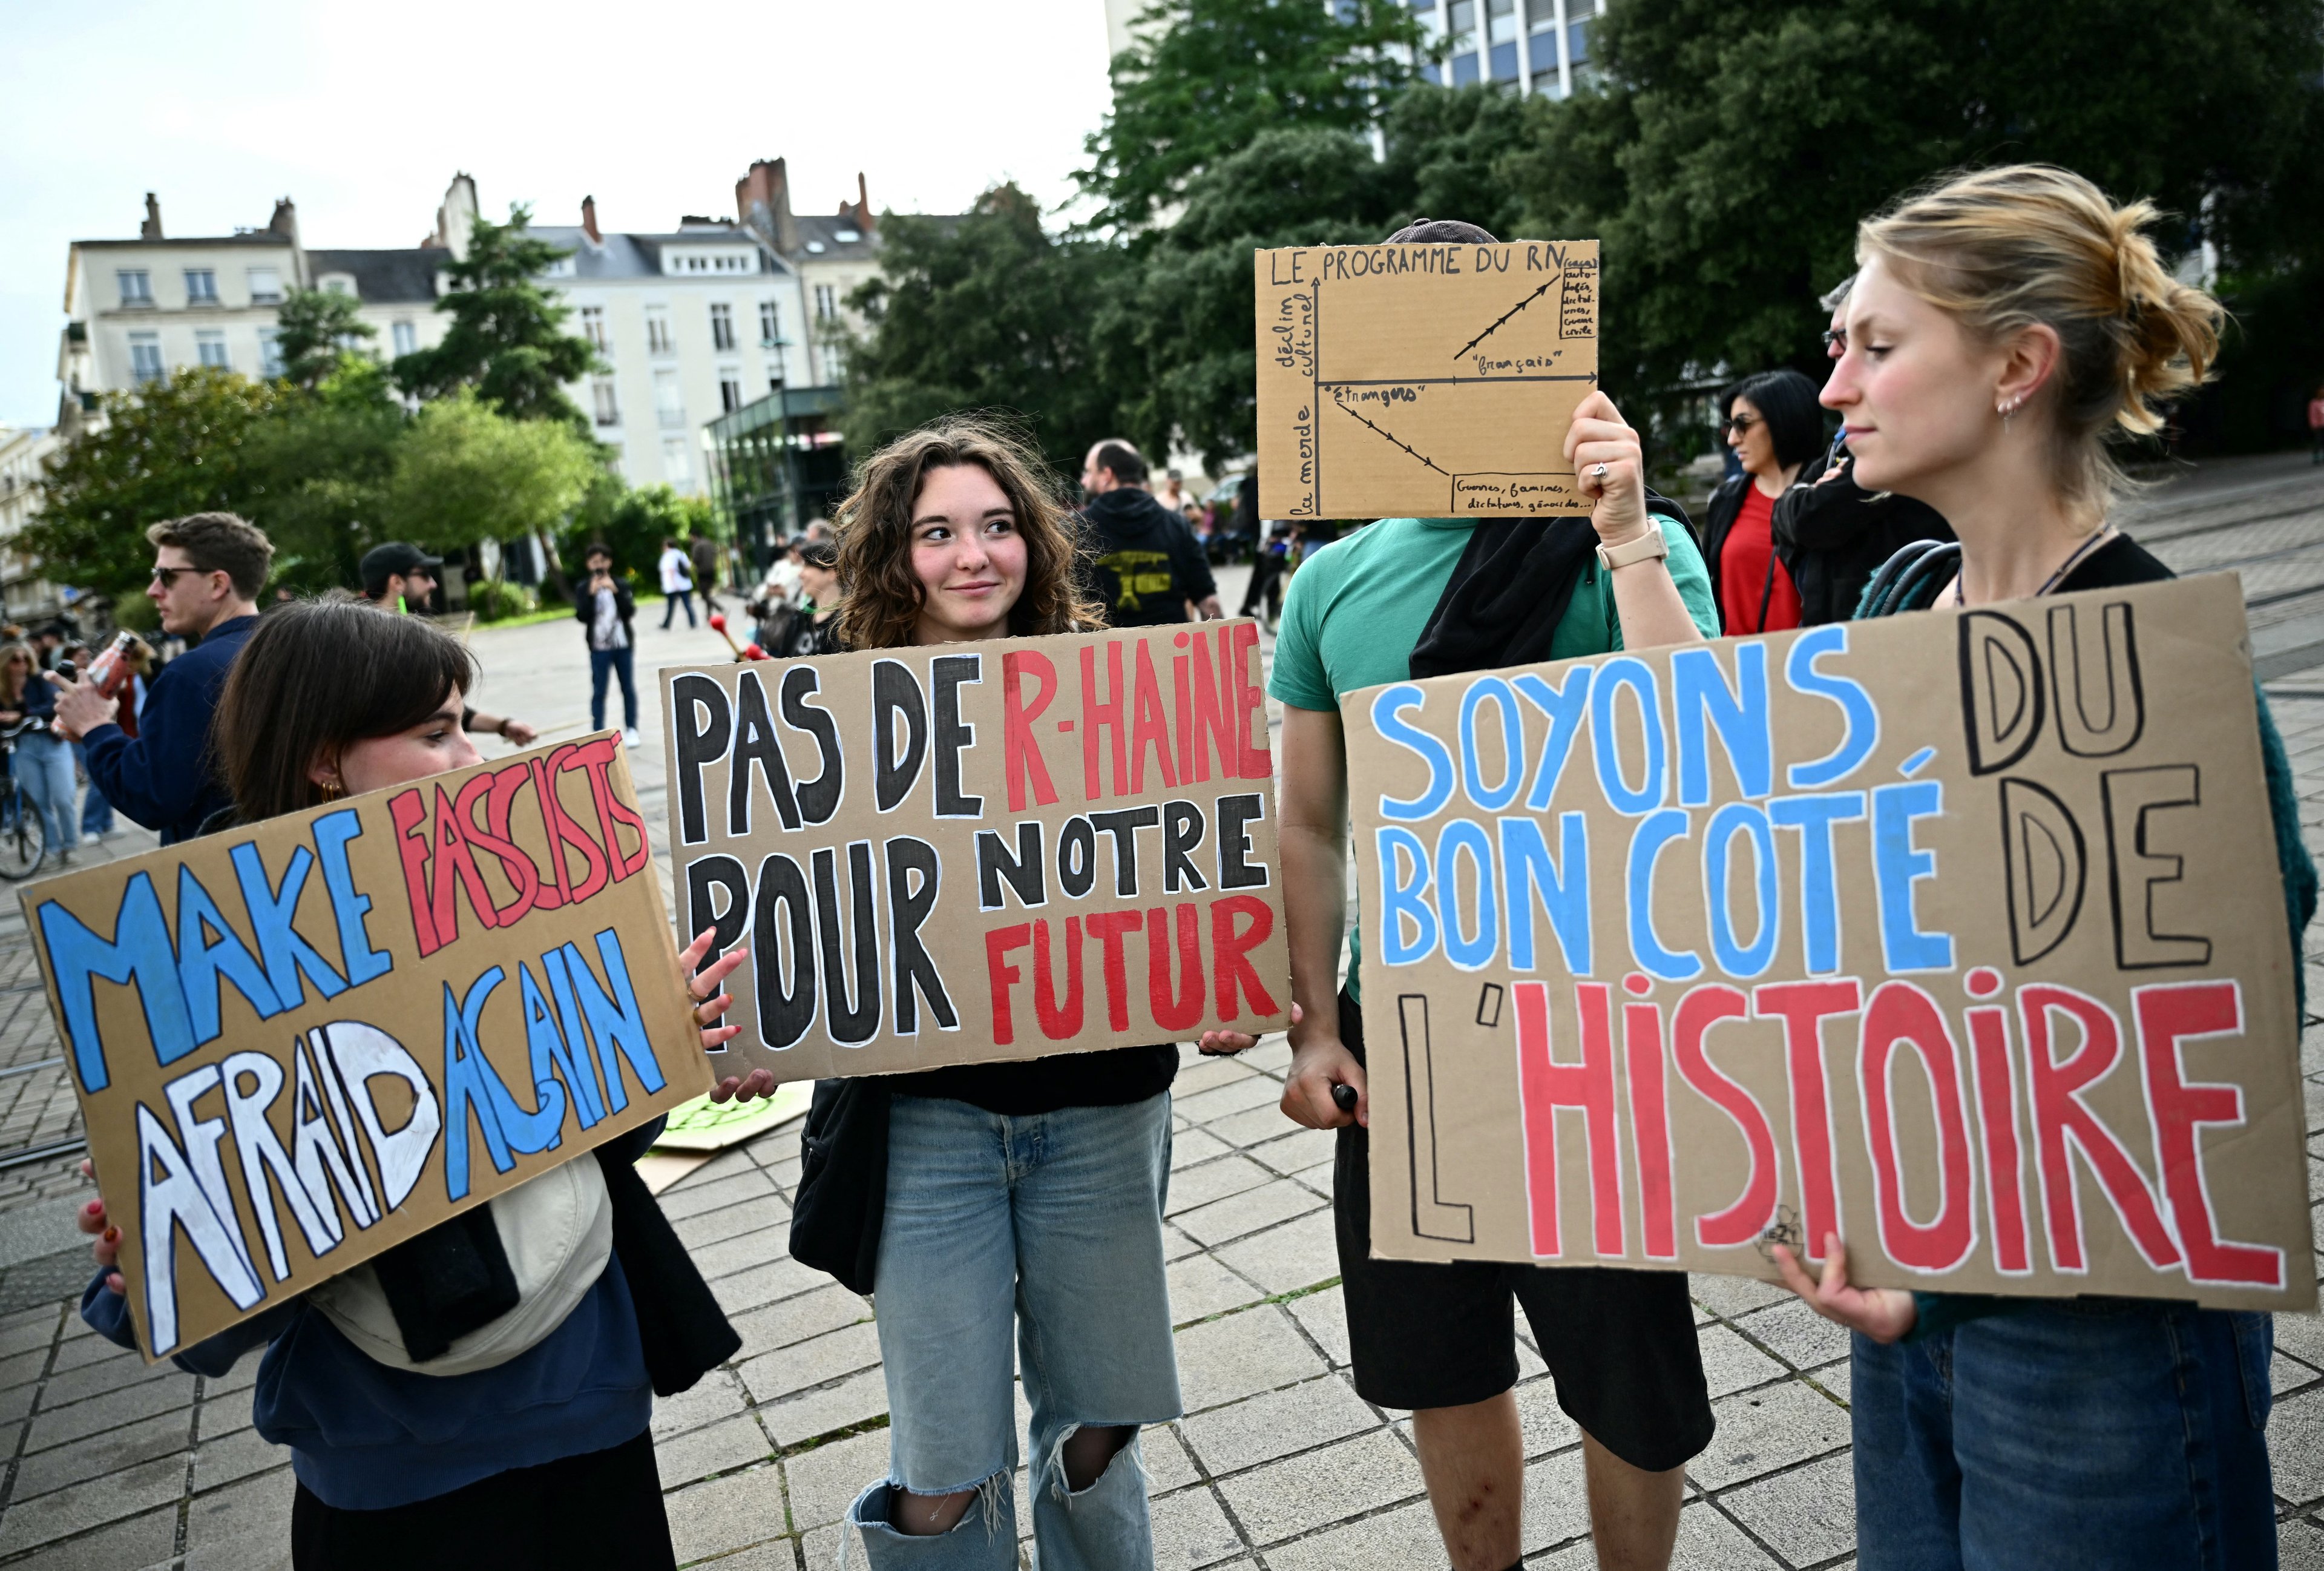 Manifestantes em Nantes levantavam placas contrárias às propostas da extrema-direita